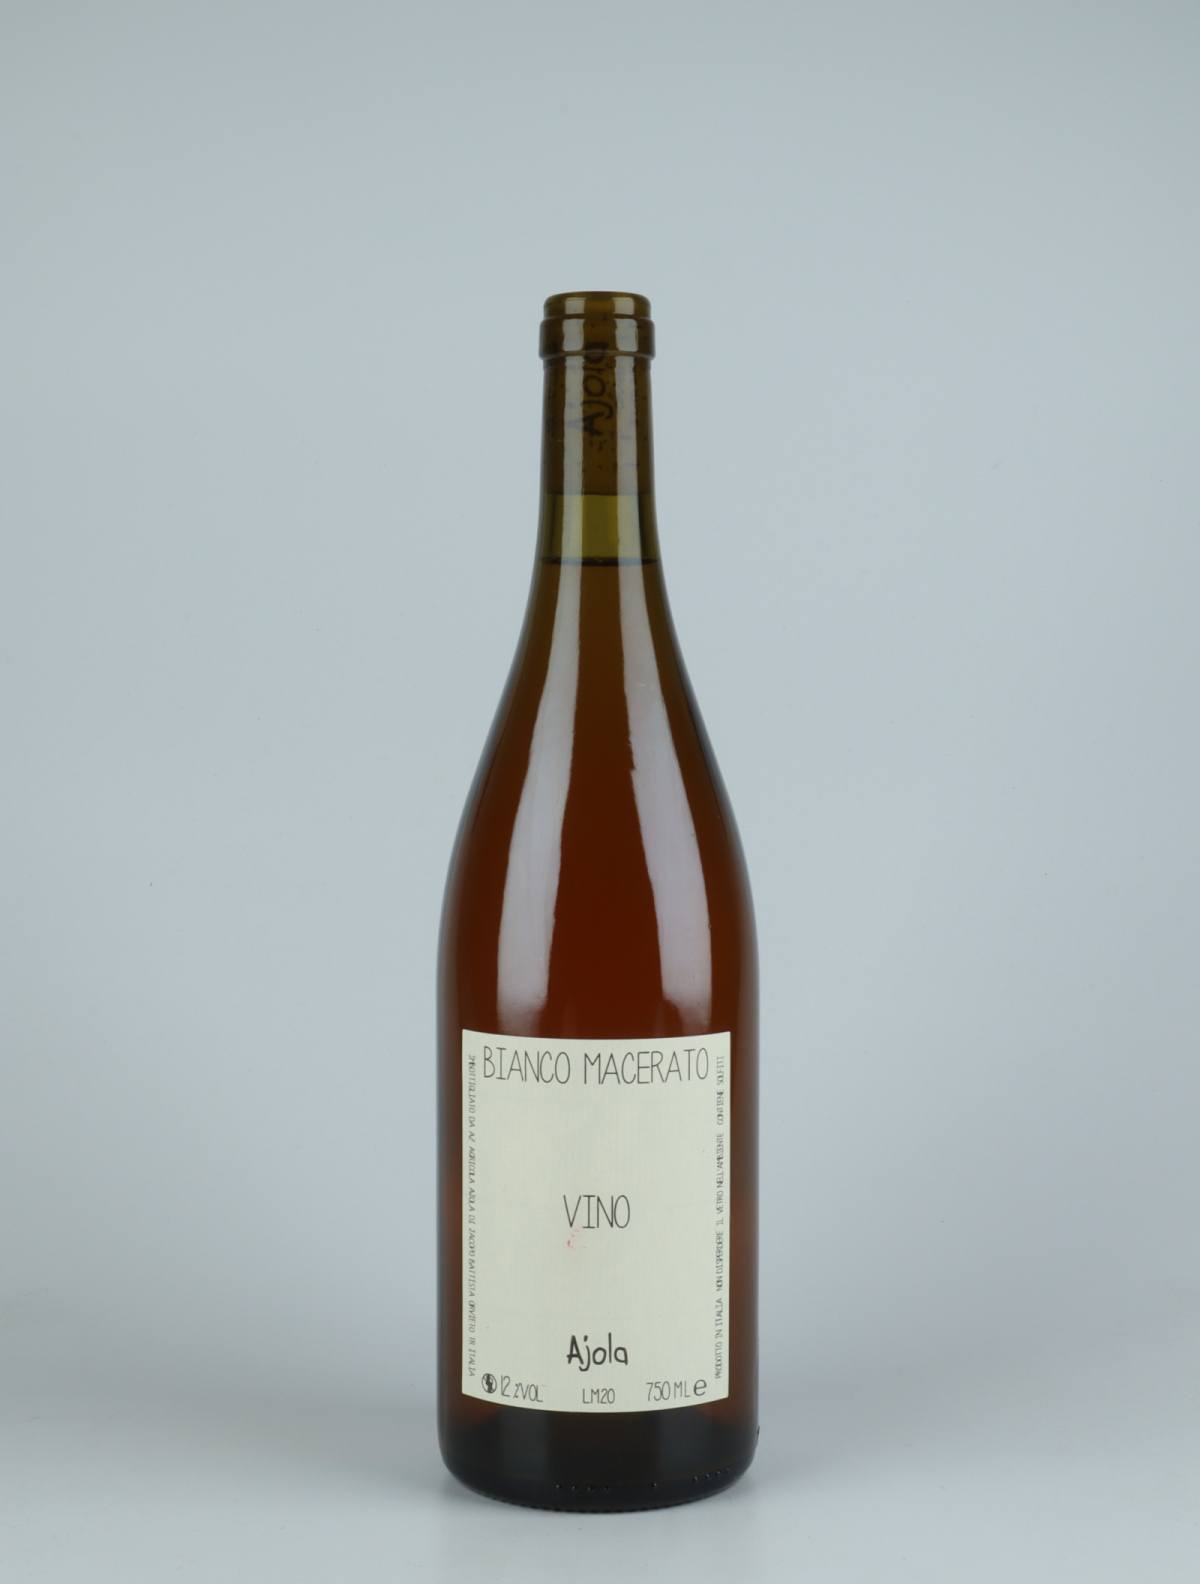 A bottle 2020 Vino Bianco Macerato Orange wine from Ajola, Umbria in Italy